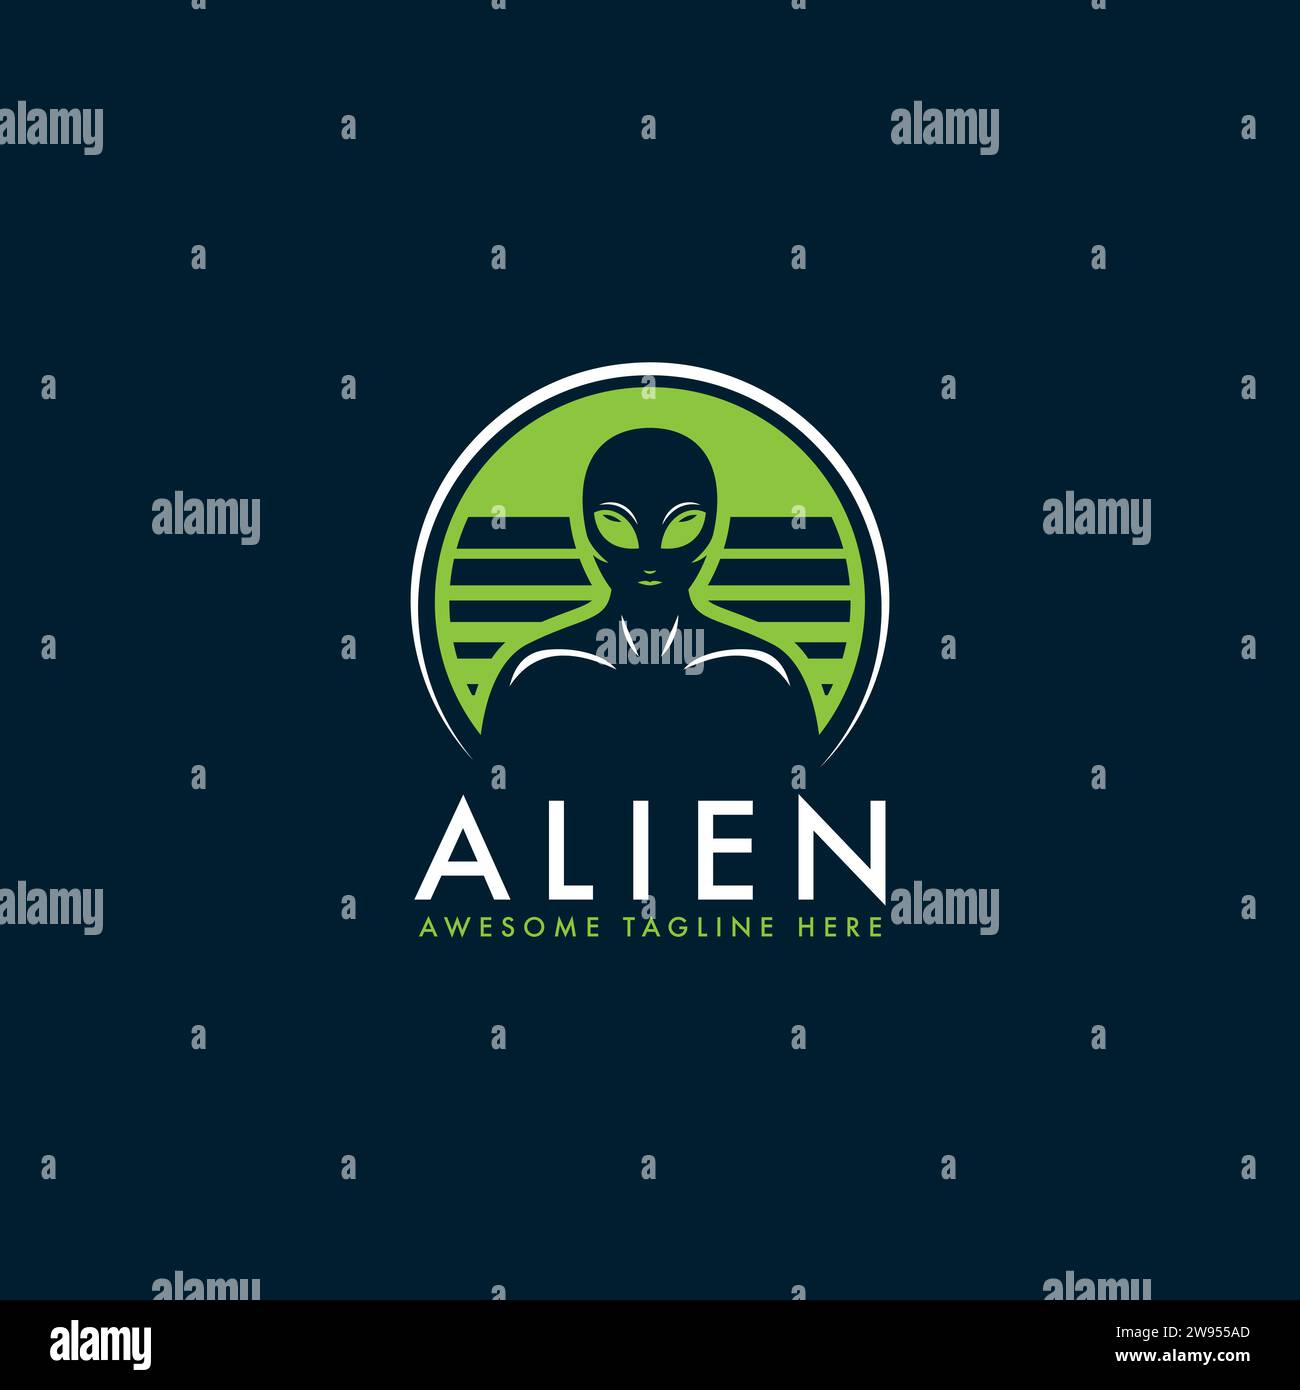 Illustrazione del logo Alien Vector. Logo alieno minimale su sfondo blu scuro. Illustrazione Vettoriale